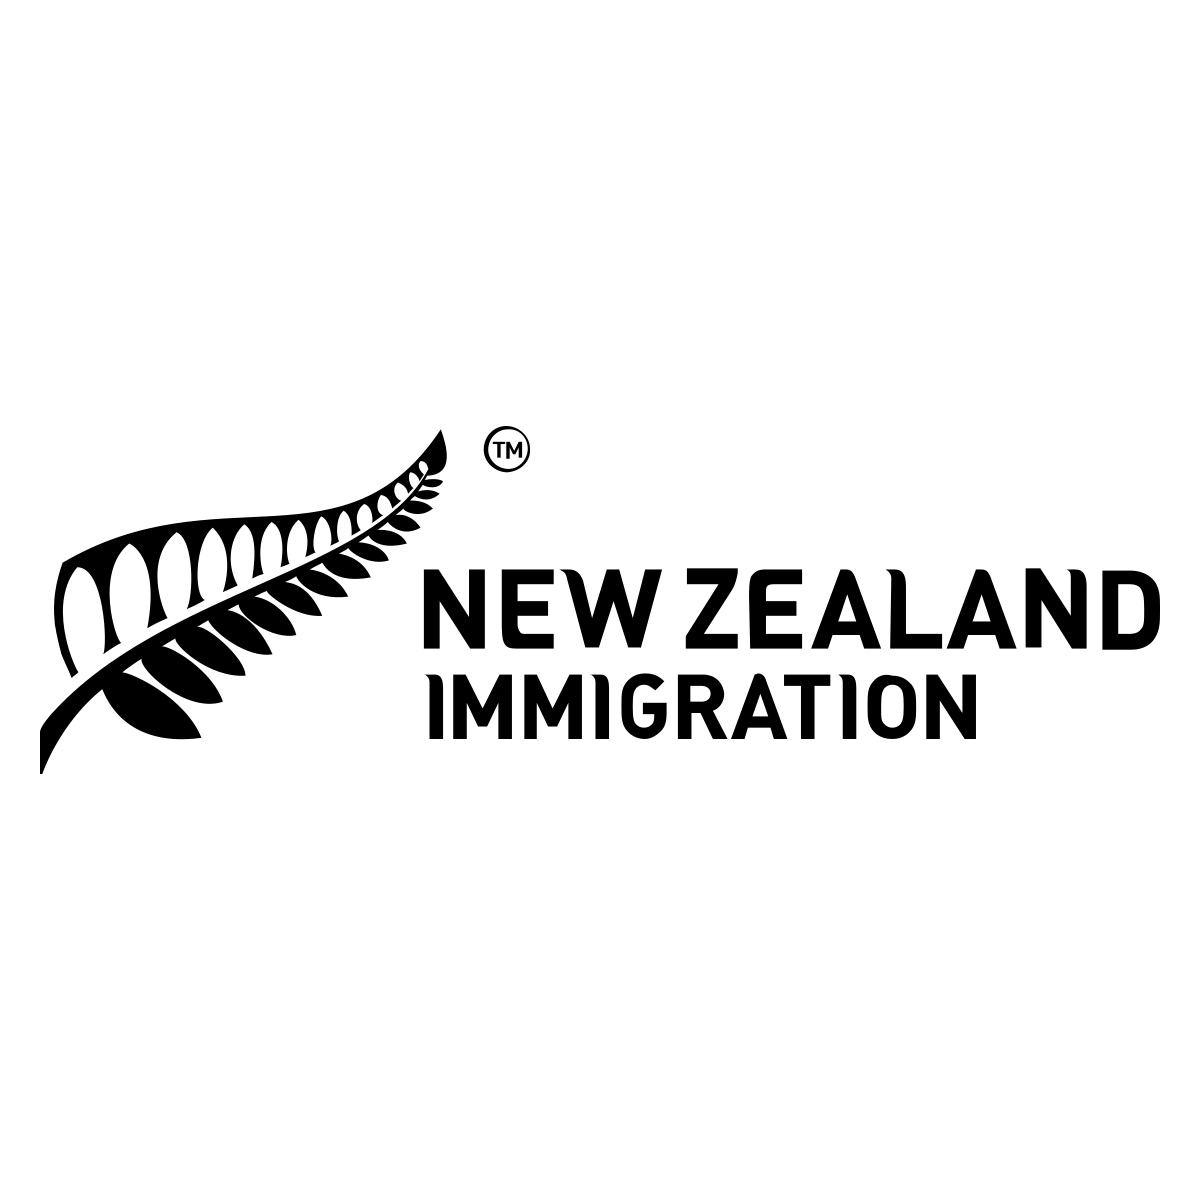 www.immigration.govt.nz